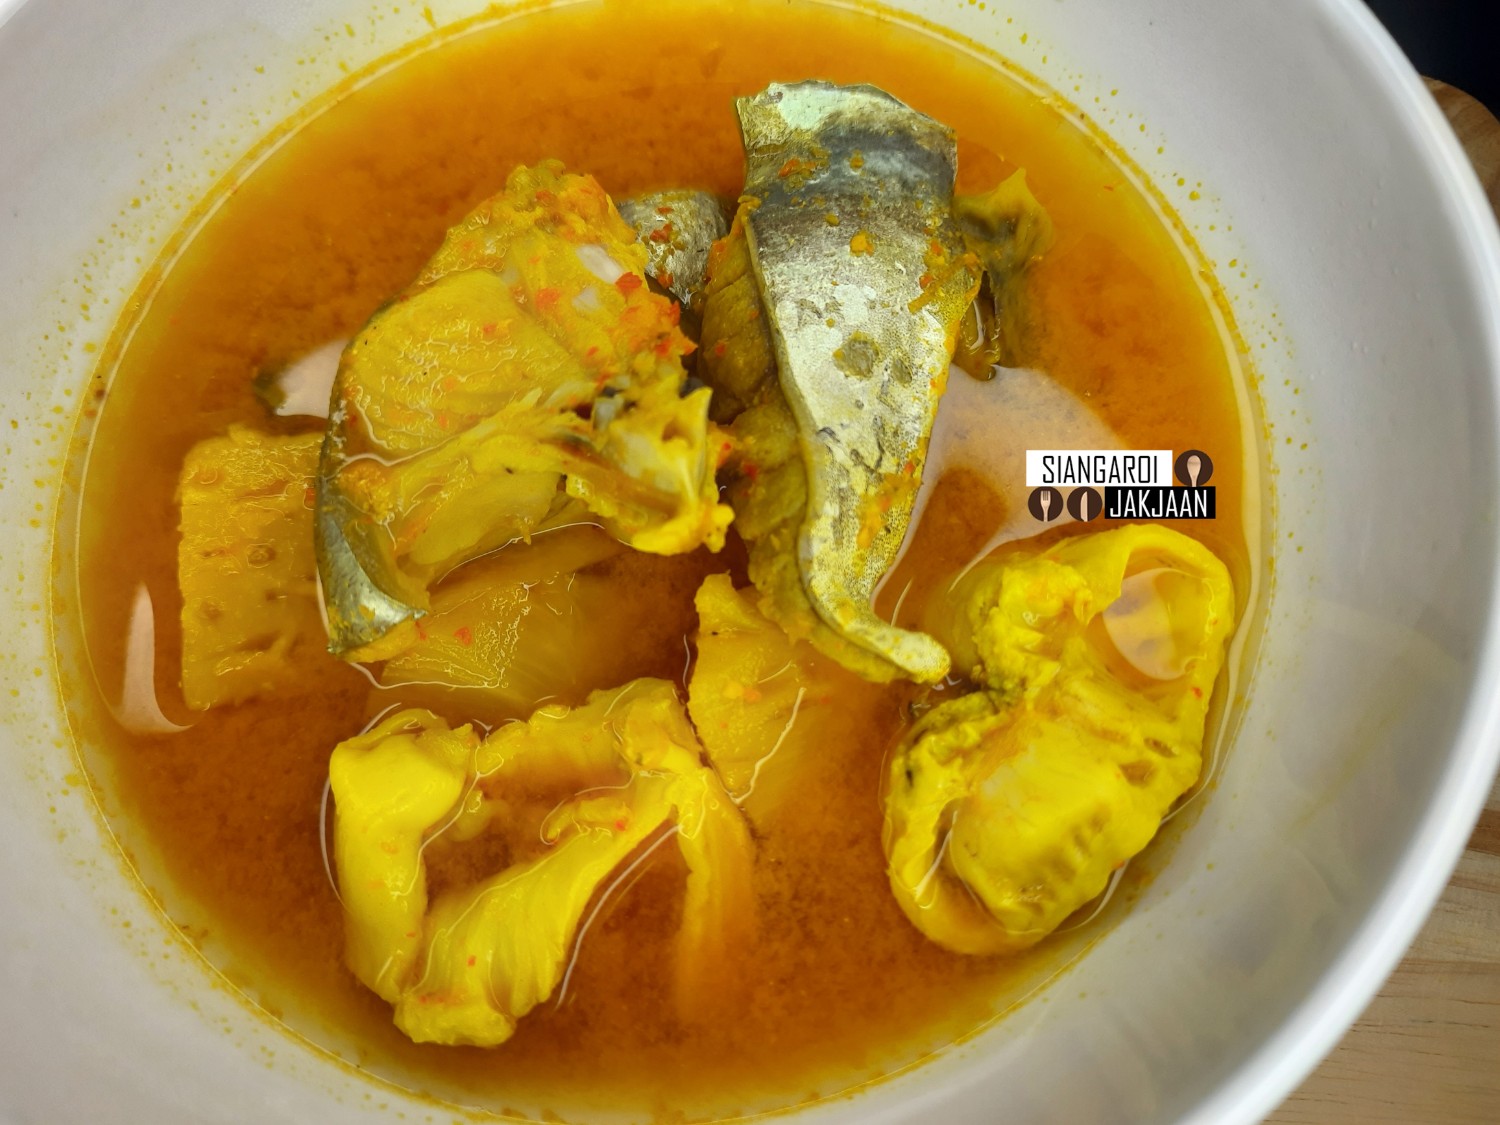 แกงส้มปลามะยงน้ำแกงส้มเผ็ดถึงเครื่องแบบชาวใต้ - Pantip